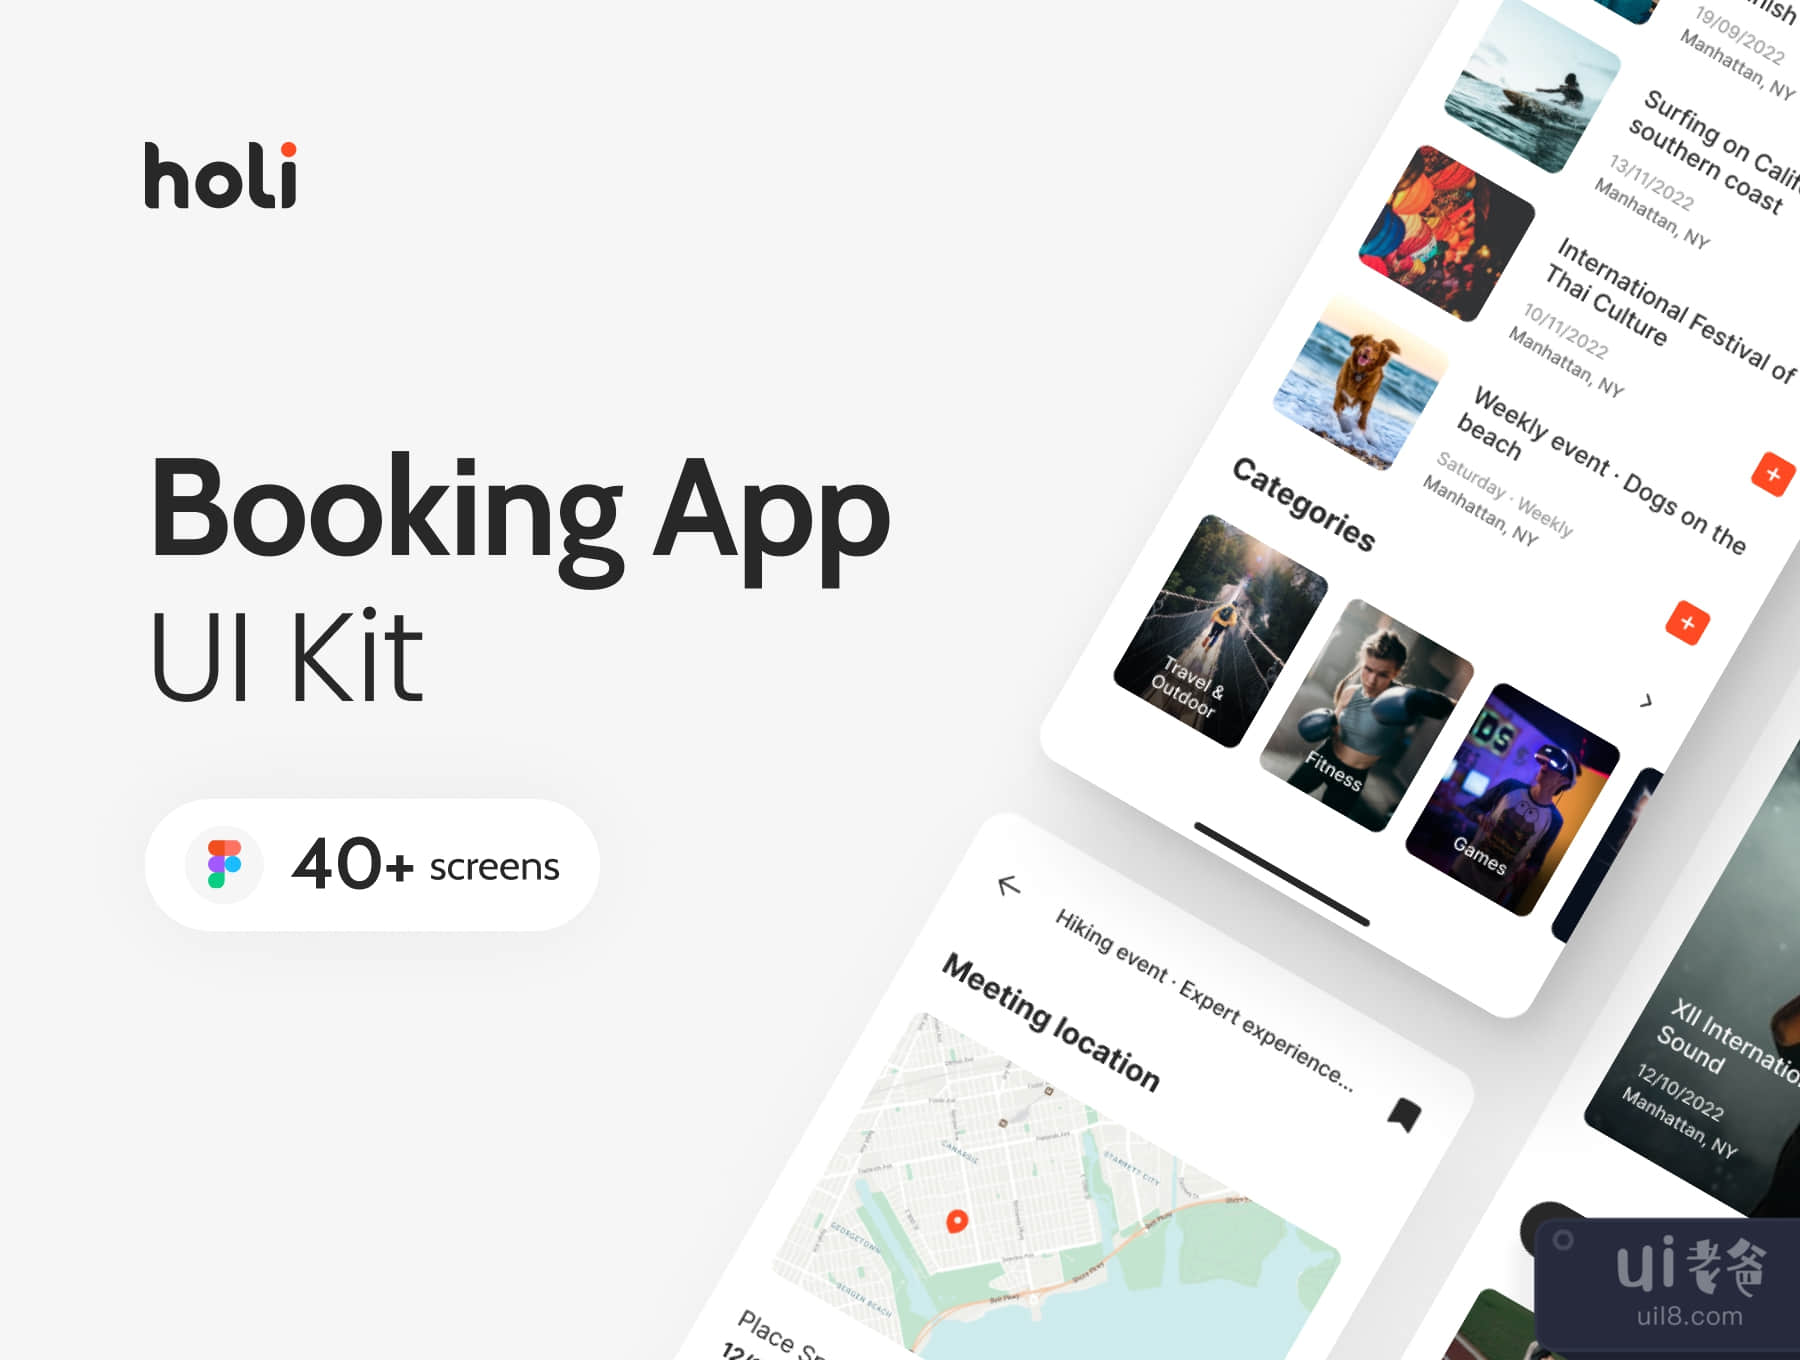 霍利 - 预订应用程序UI套件 (Holi · Booking App UI Kit)插图